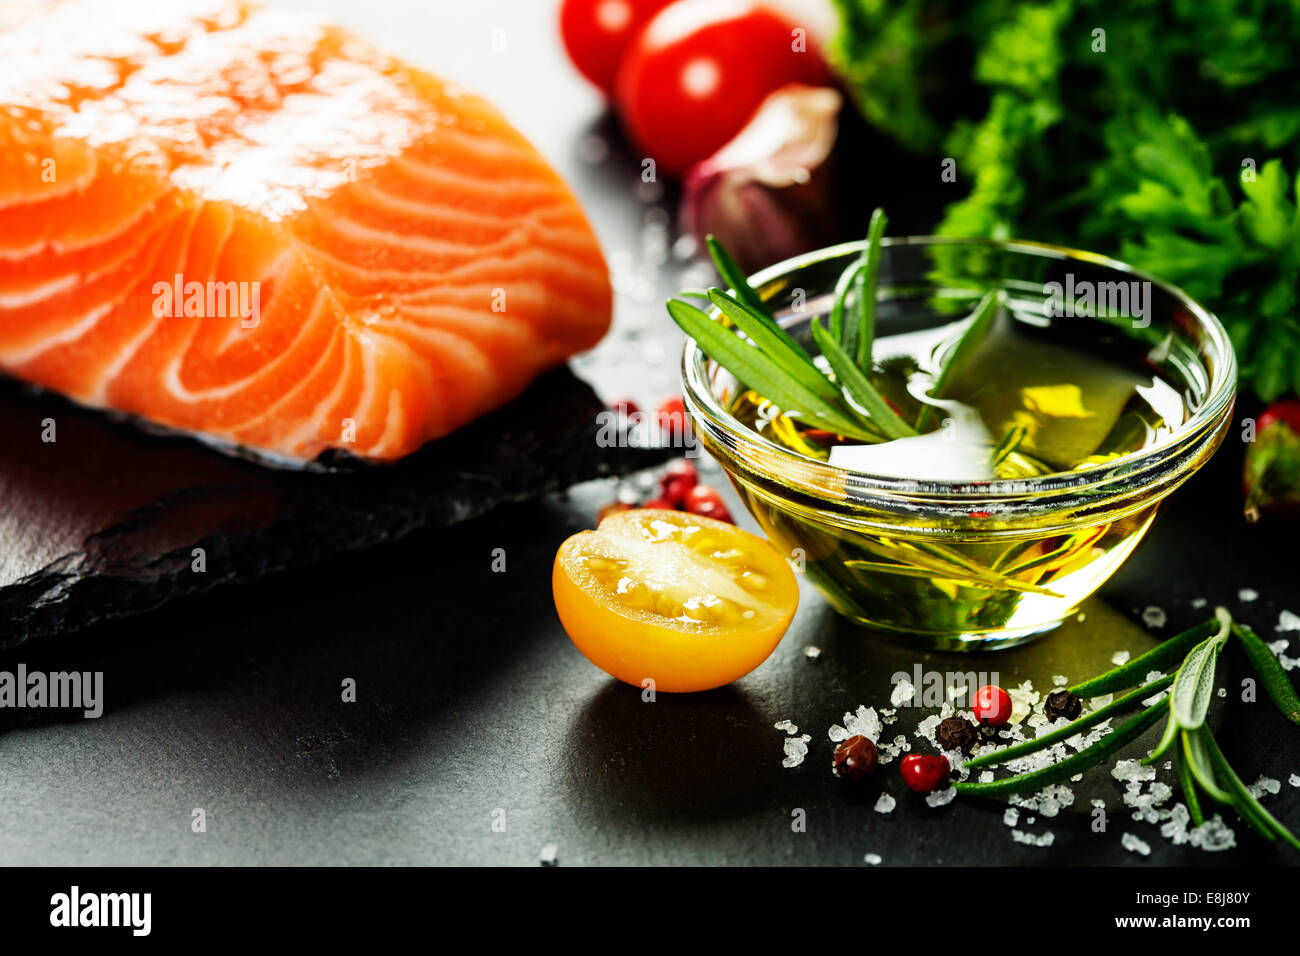 Partie de délicieux filets de saumon frais aux herbes aromatiques, épices et légumes - alimentation saine, régime alimentaire ou concept de cuisine Banque D'Images